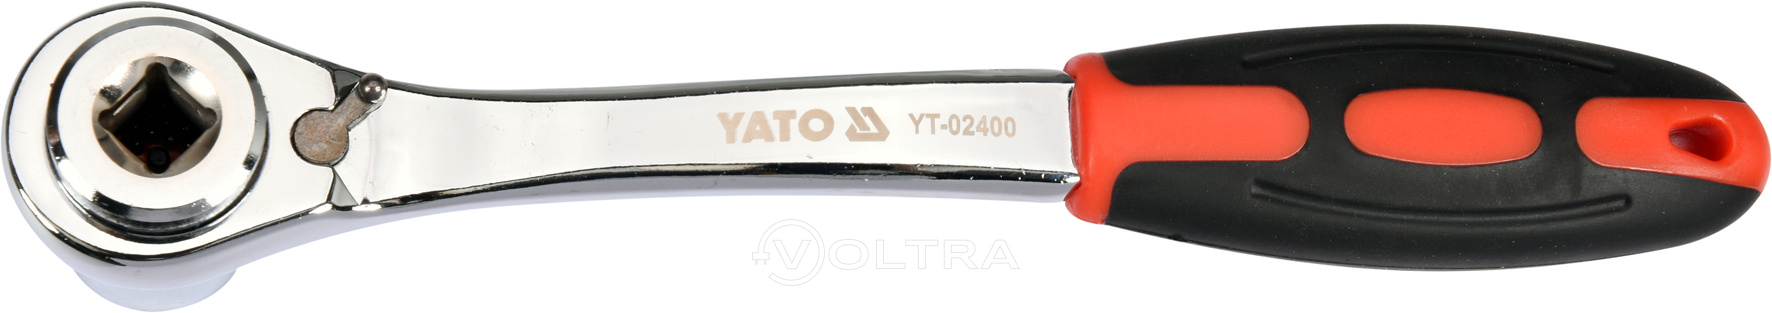 Ключ универсальный торцевой с трещеткой 8-19мм Yato YT-02400